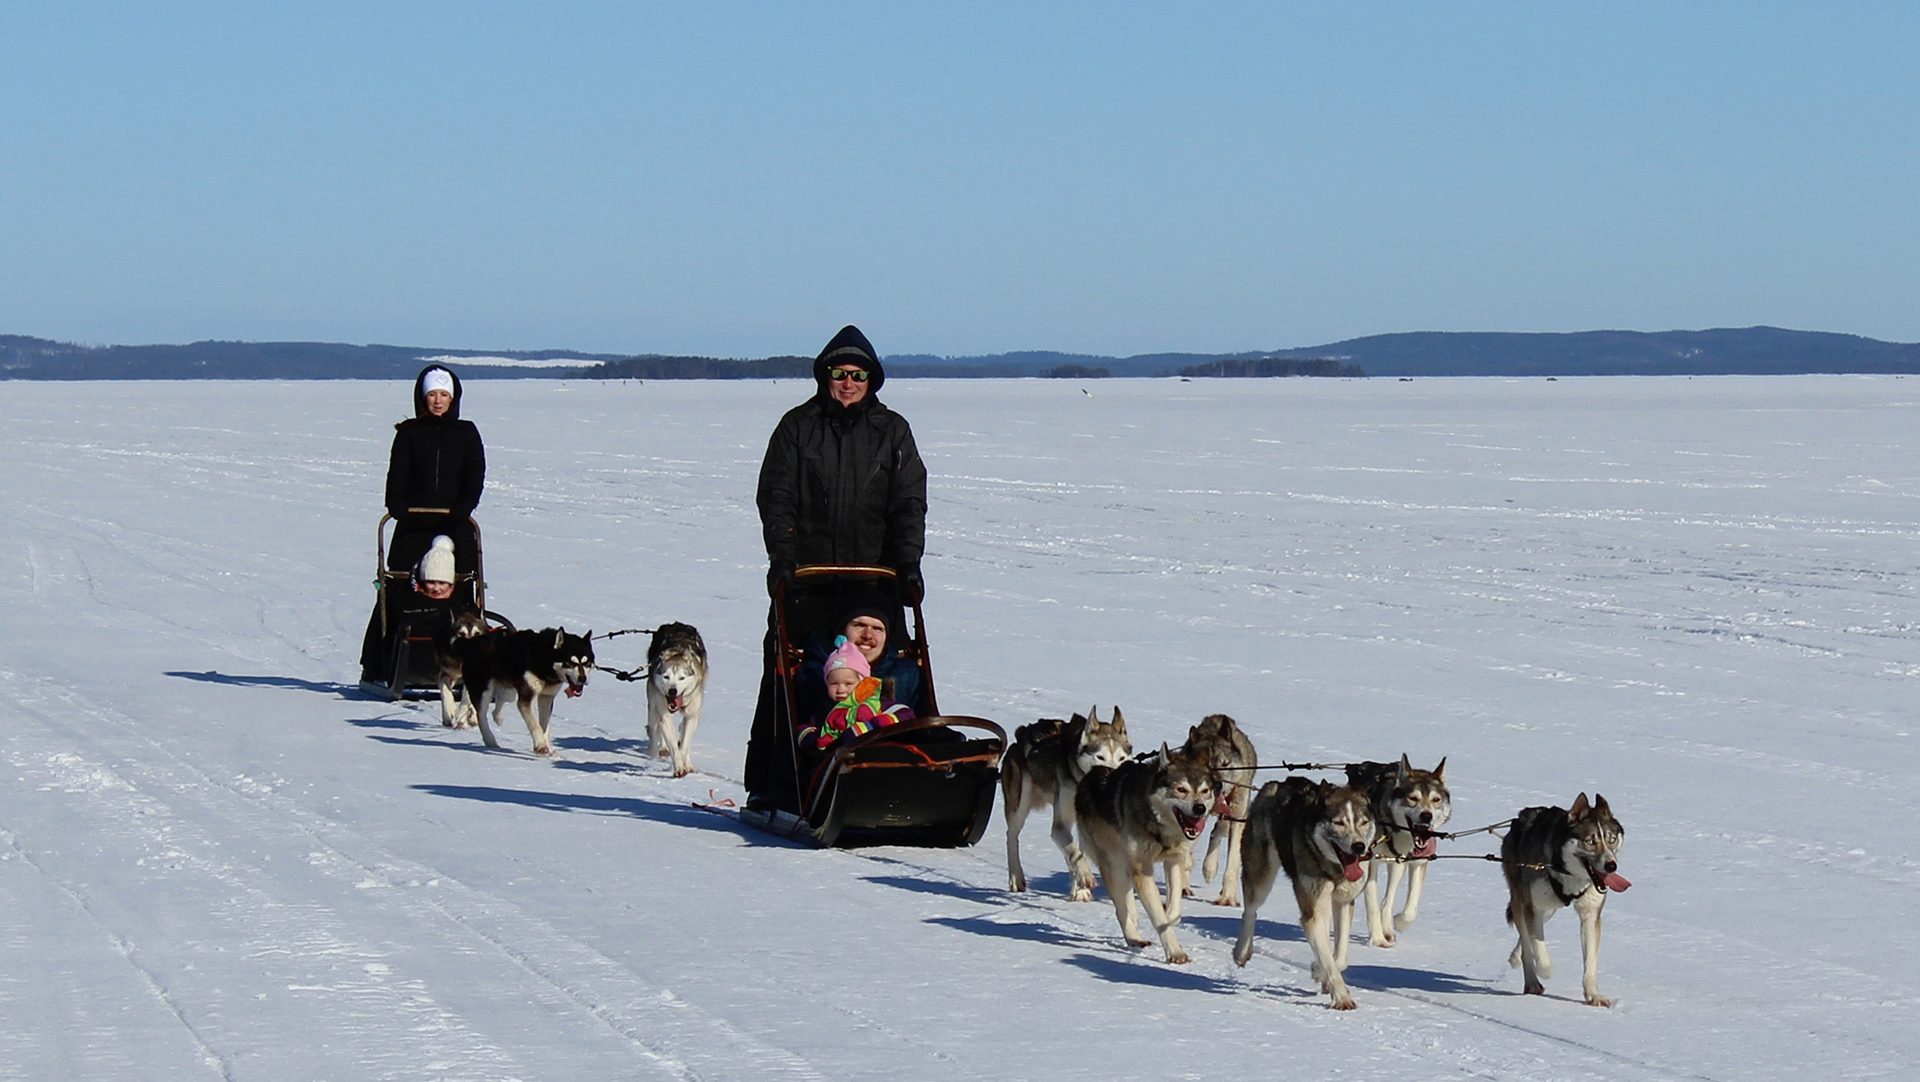 Lakeland, Bomba / Huskyajelu, Husky ride, talviaktiviteetti, Villi Pohjola / Wild Nordic Finland @wildnordicfinland